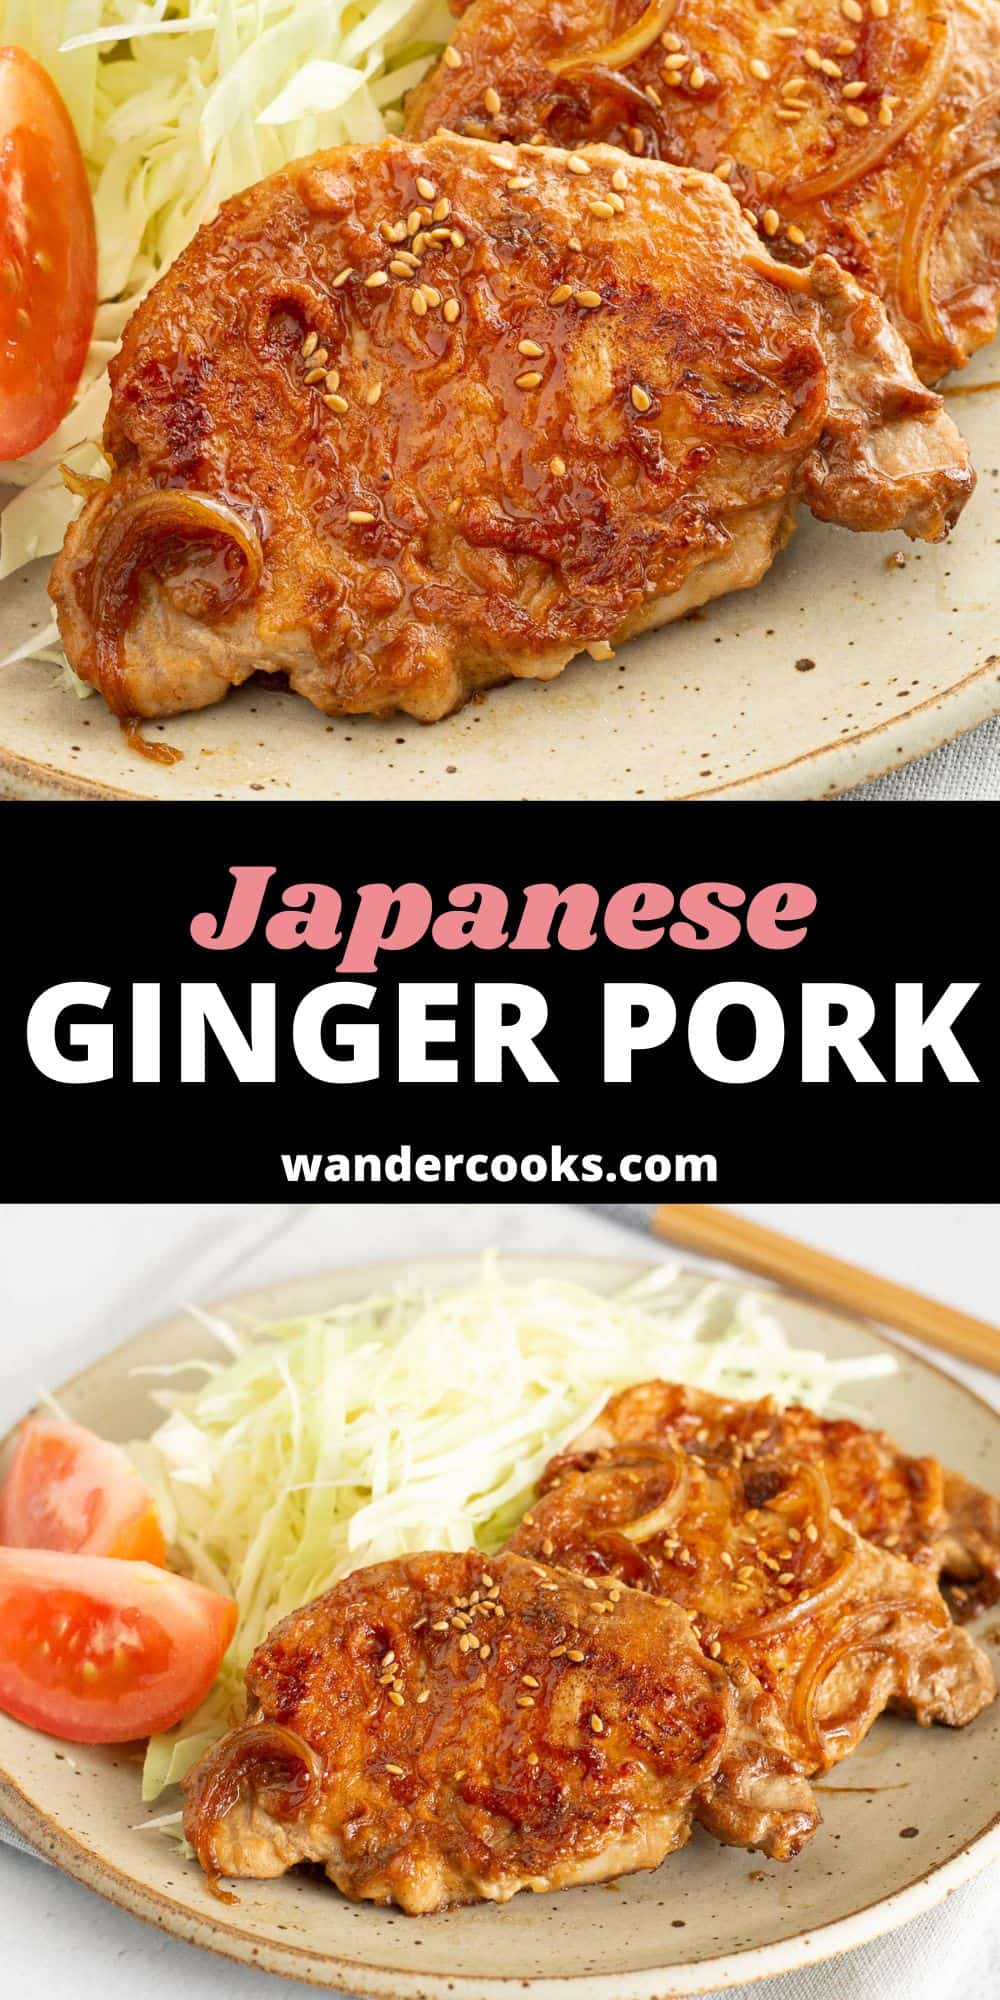 Shogayaki - Japanese Ginger Pork